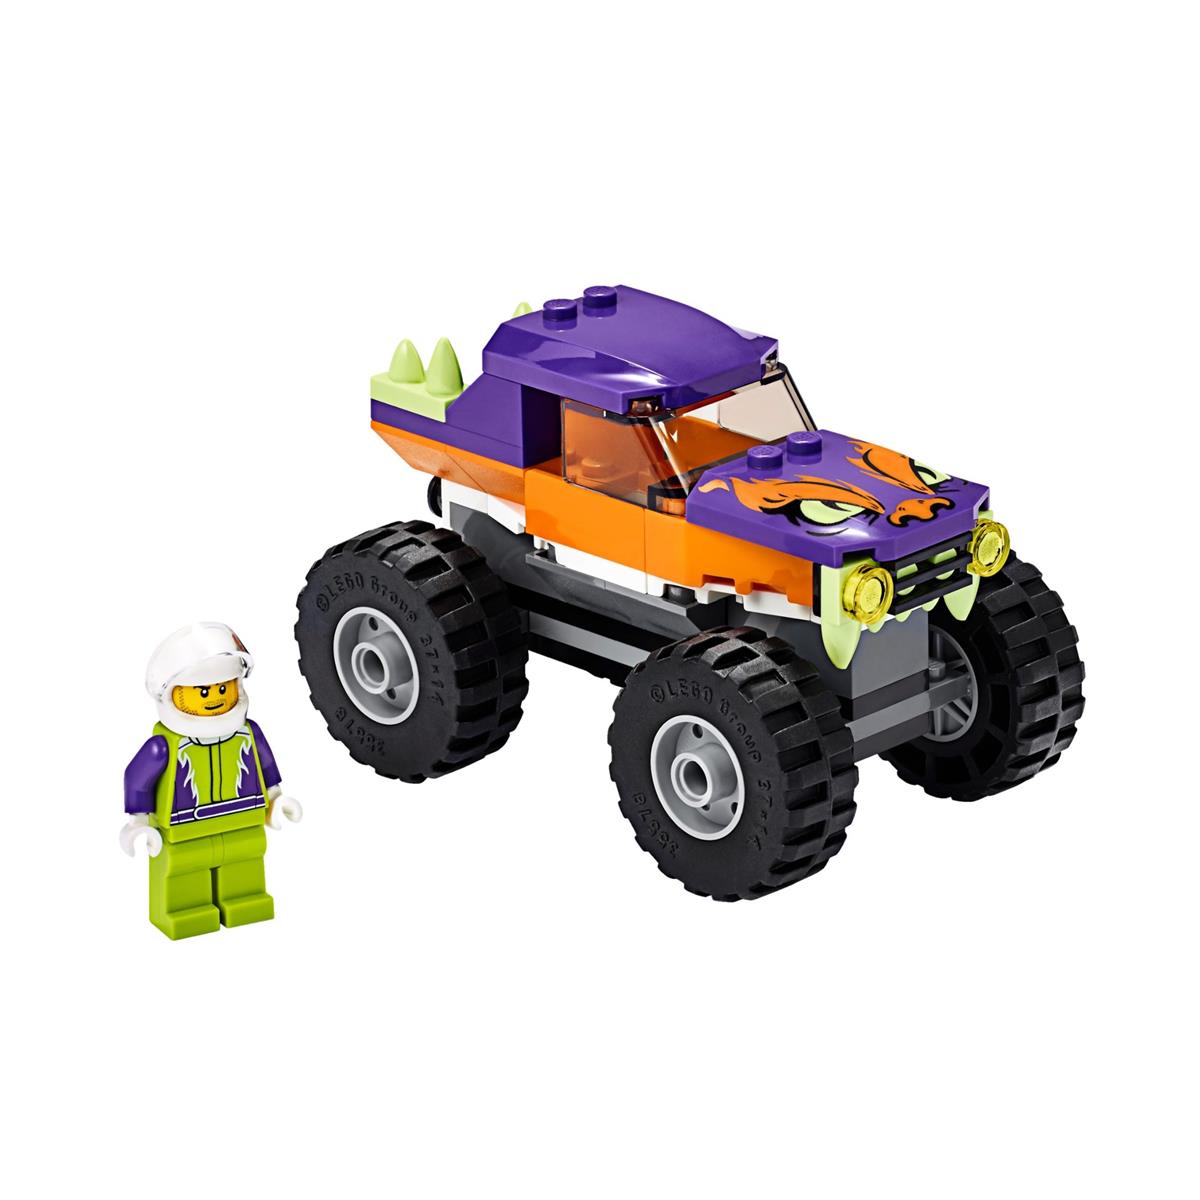 LEGO CITY MONSTER TRUCK 60251-11909